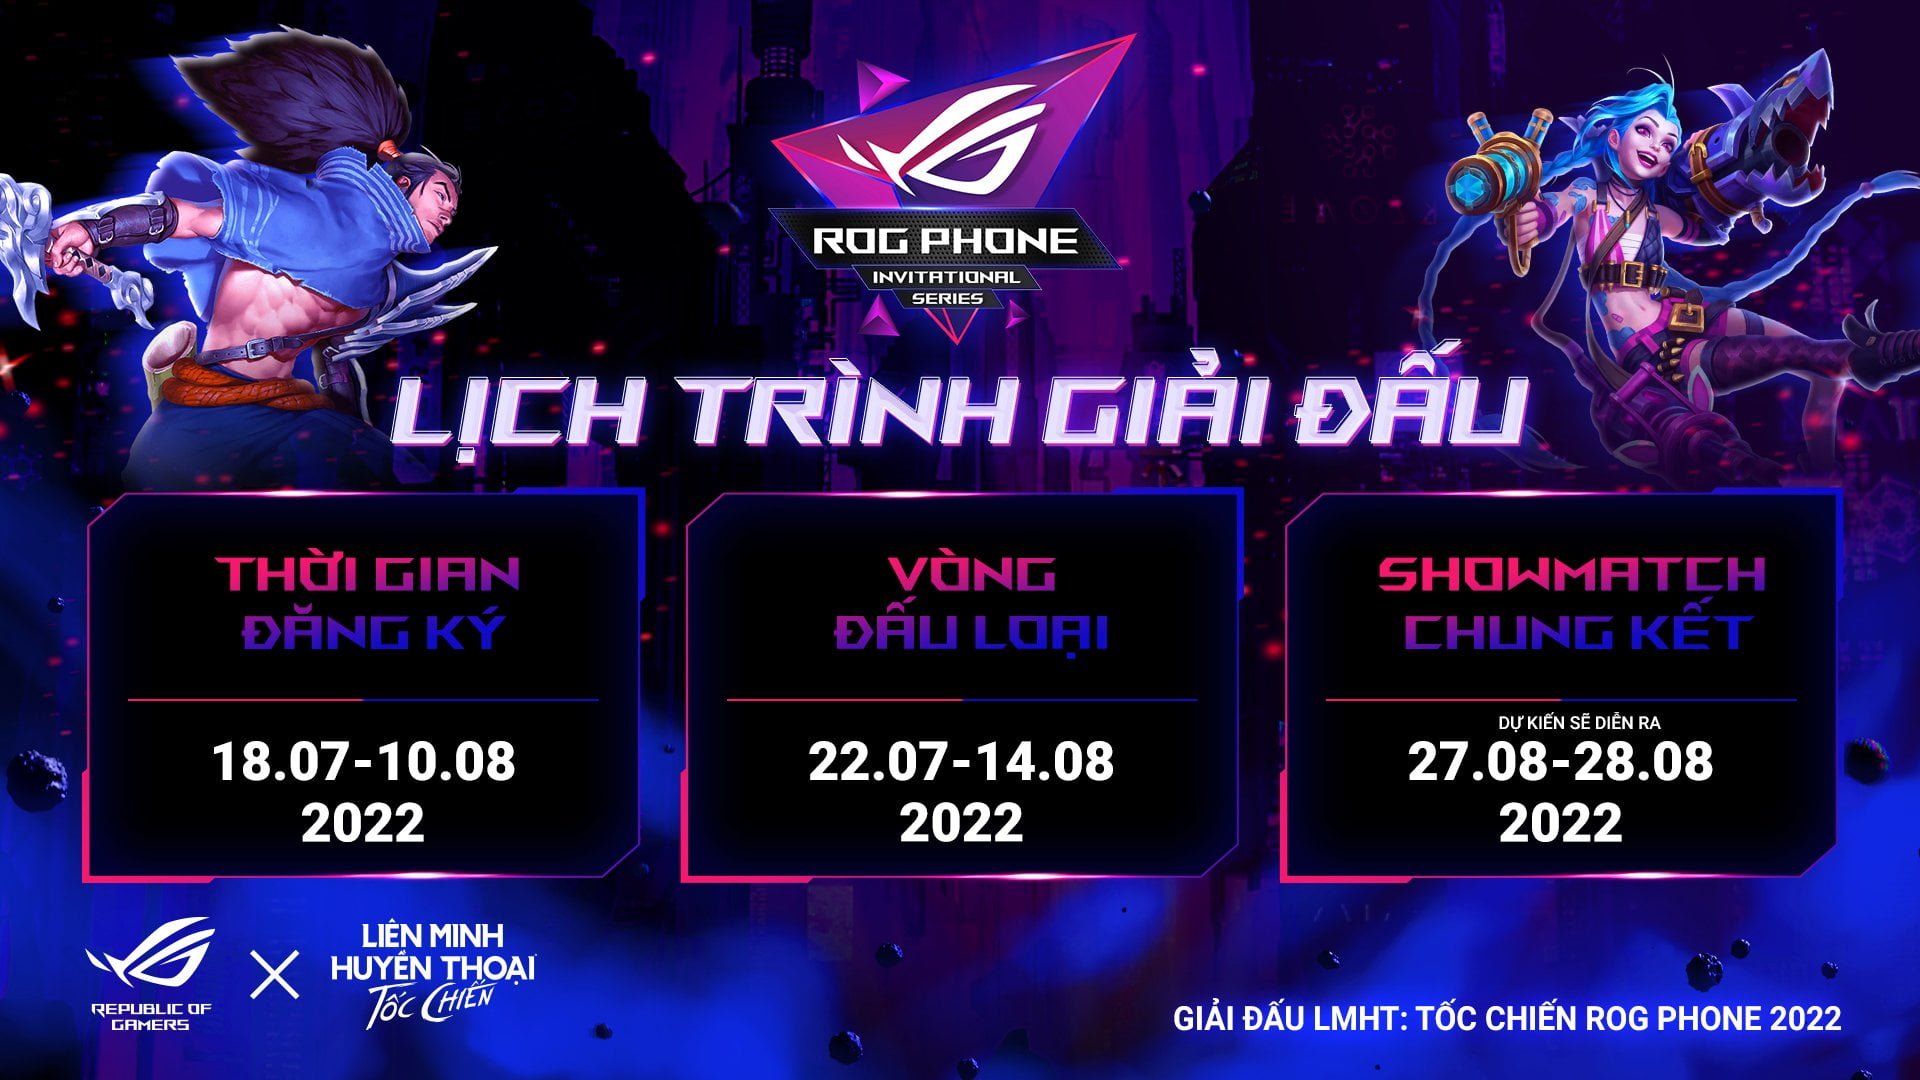 [PR] ASUS ROG và VNG công bố giải đấu ROG Phone Invitational Series 2022 bộ môn thể thao điện tử Liên Minh Huyền Thoại: Tốc Chiến - Image 2